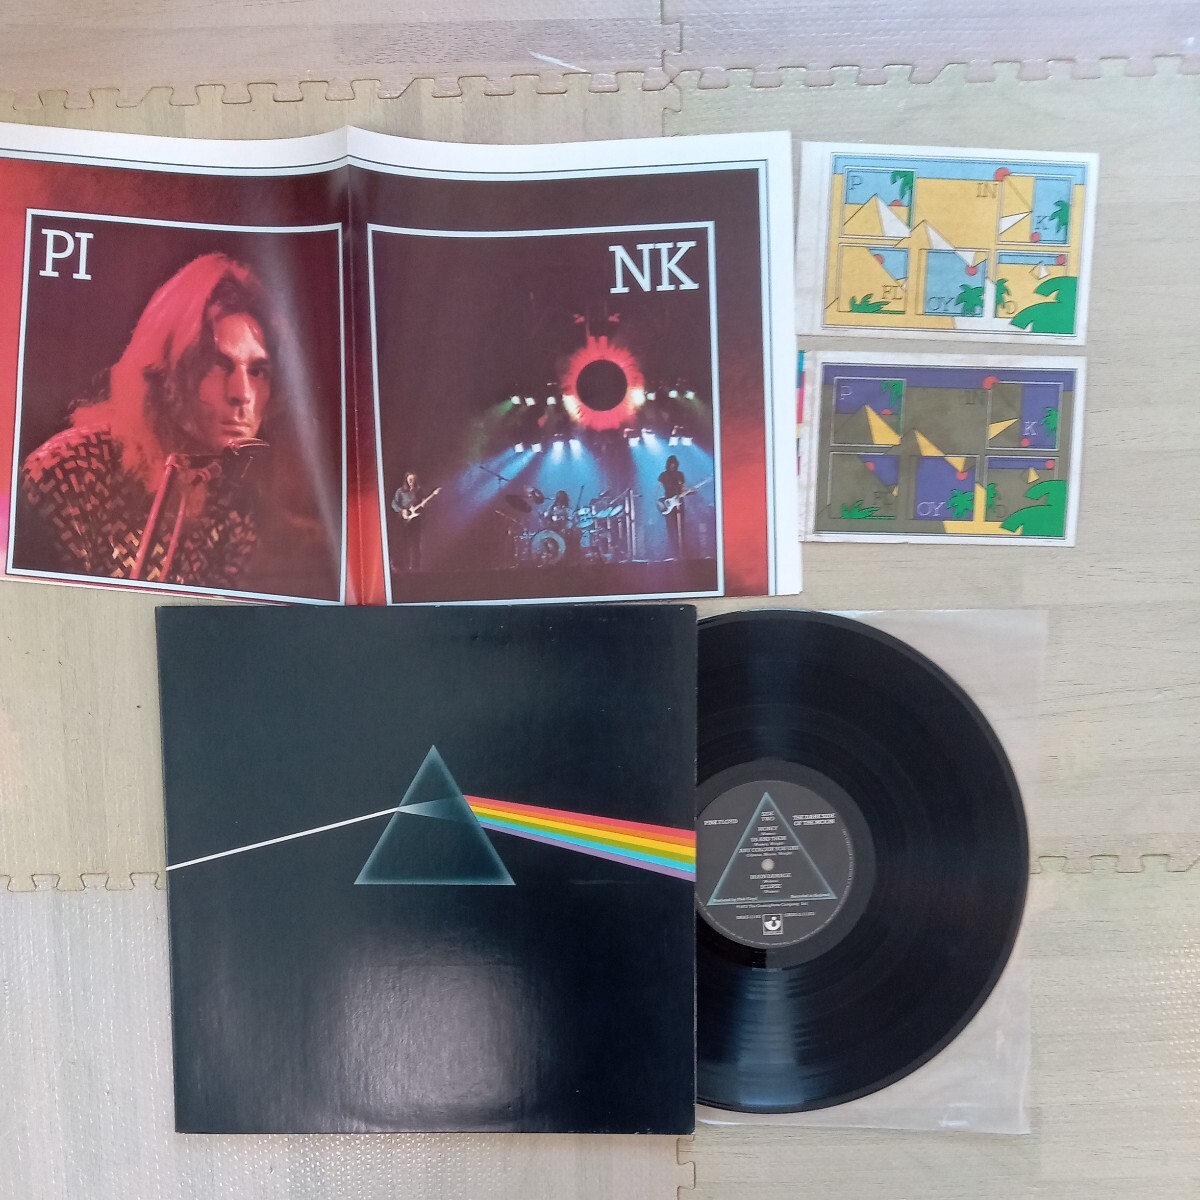 US Pink Floyd ピンク フロイド darkside of the moon 狂気 analog record vinyl レコード アナログ lp の画像1